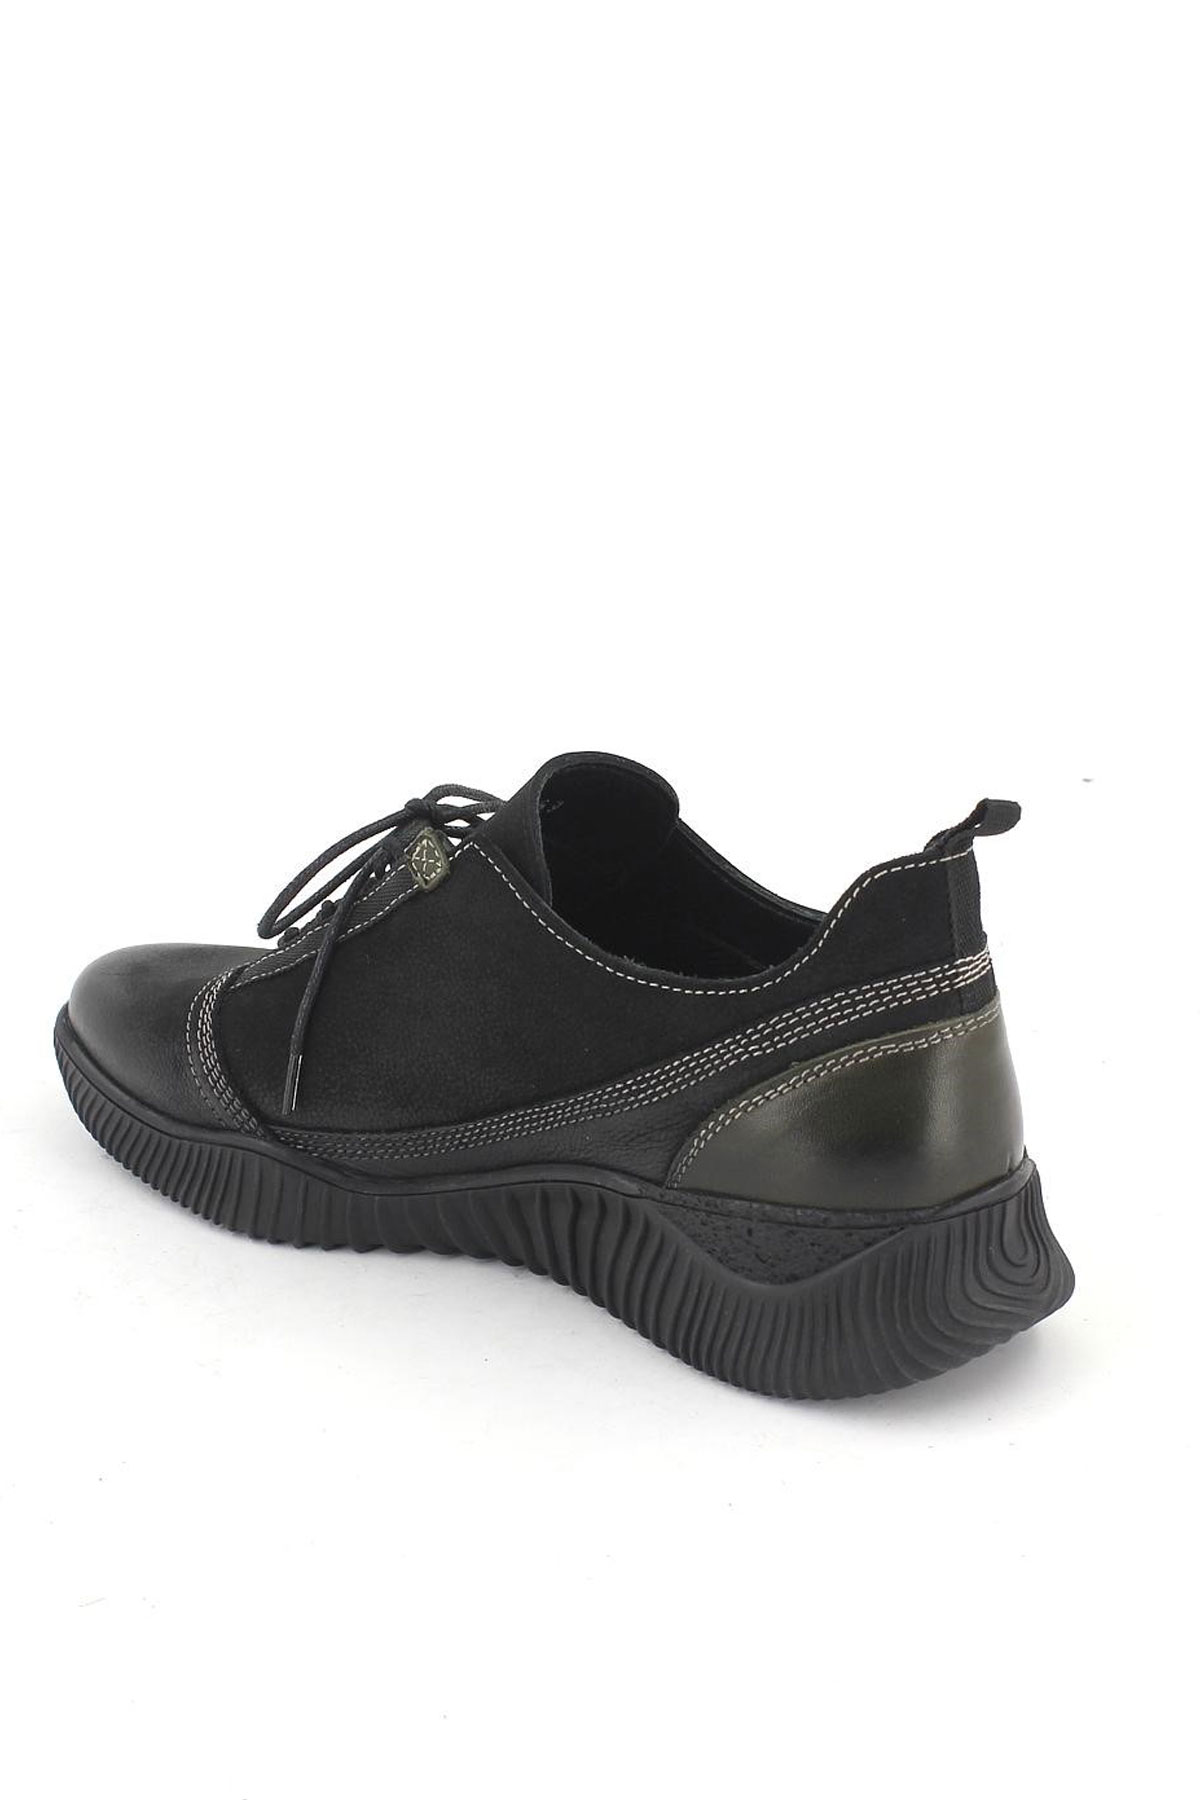 Kadın Comfort Deri Ayakkabı Siyah Yeşil 1953859K